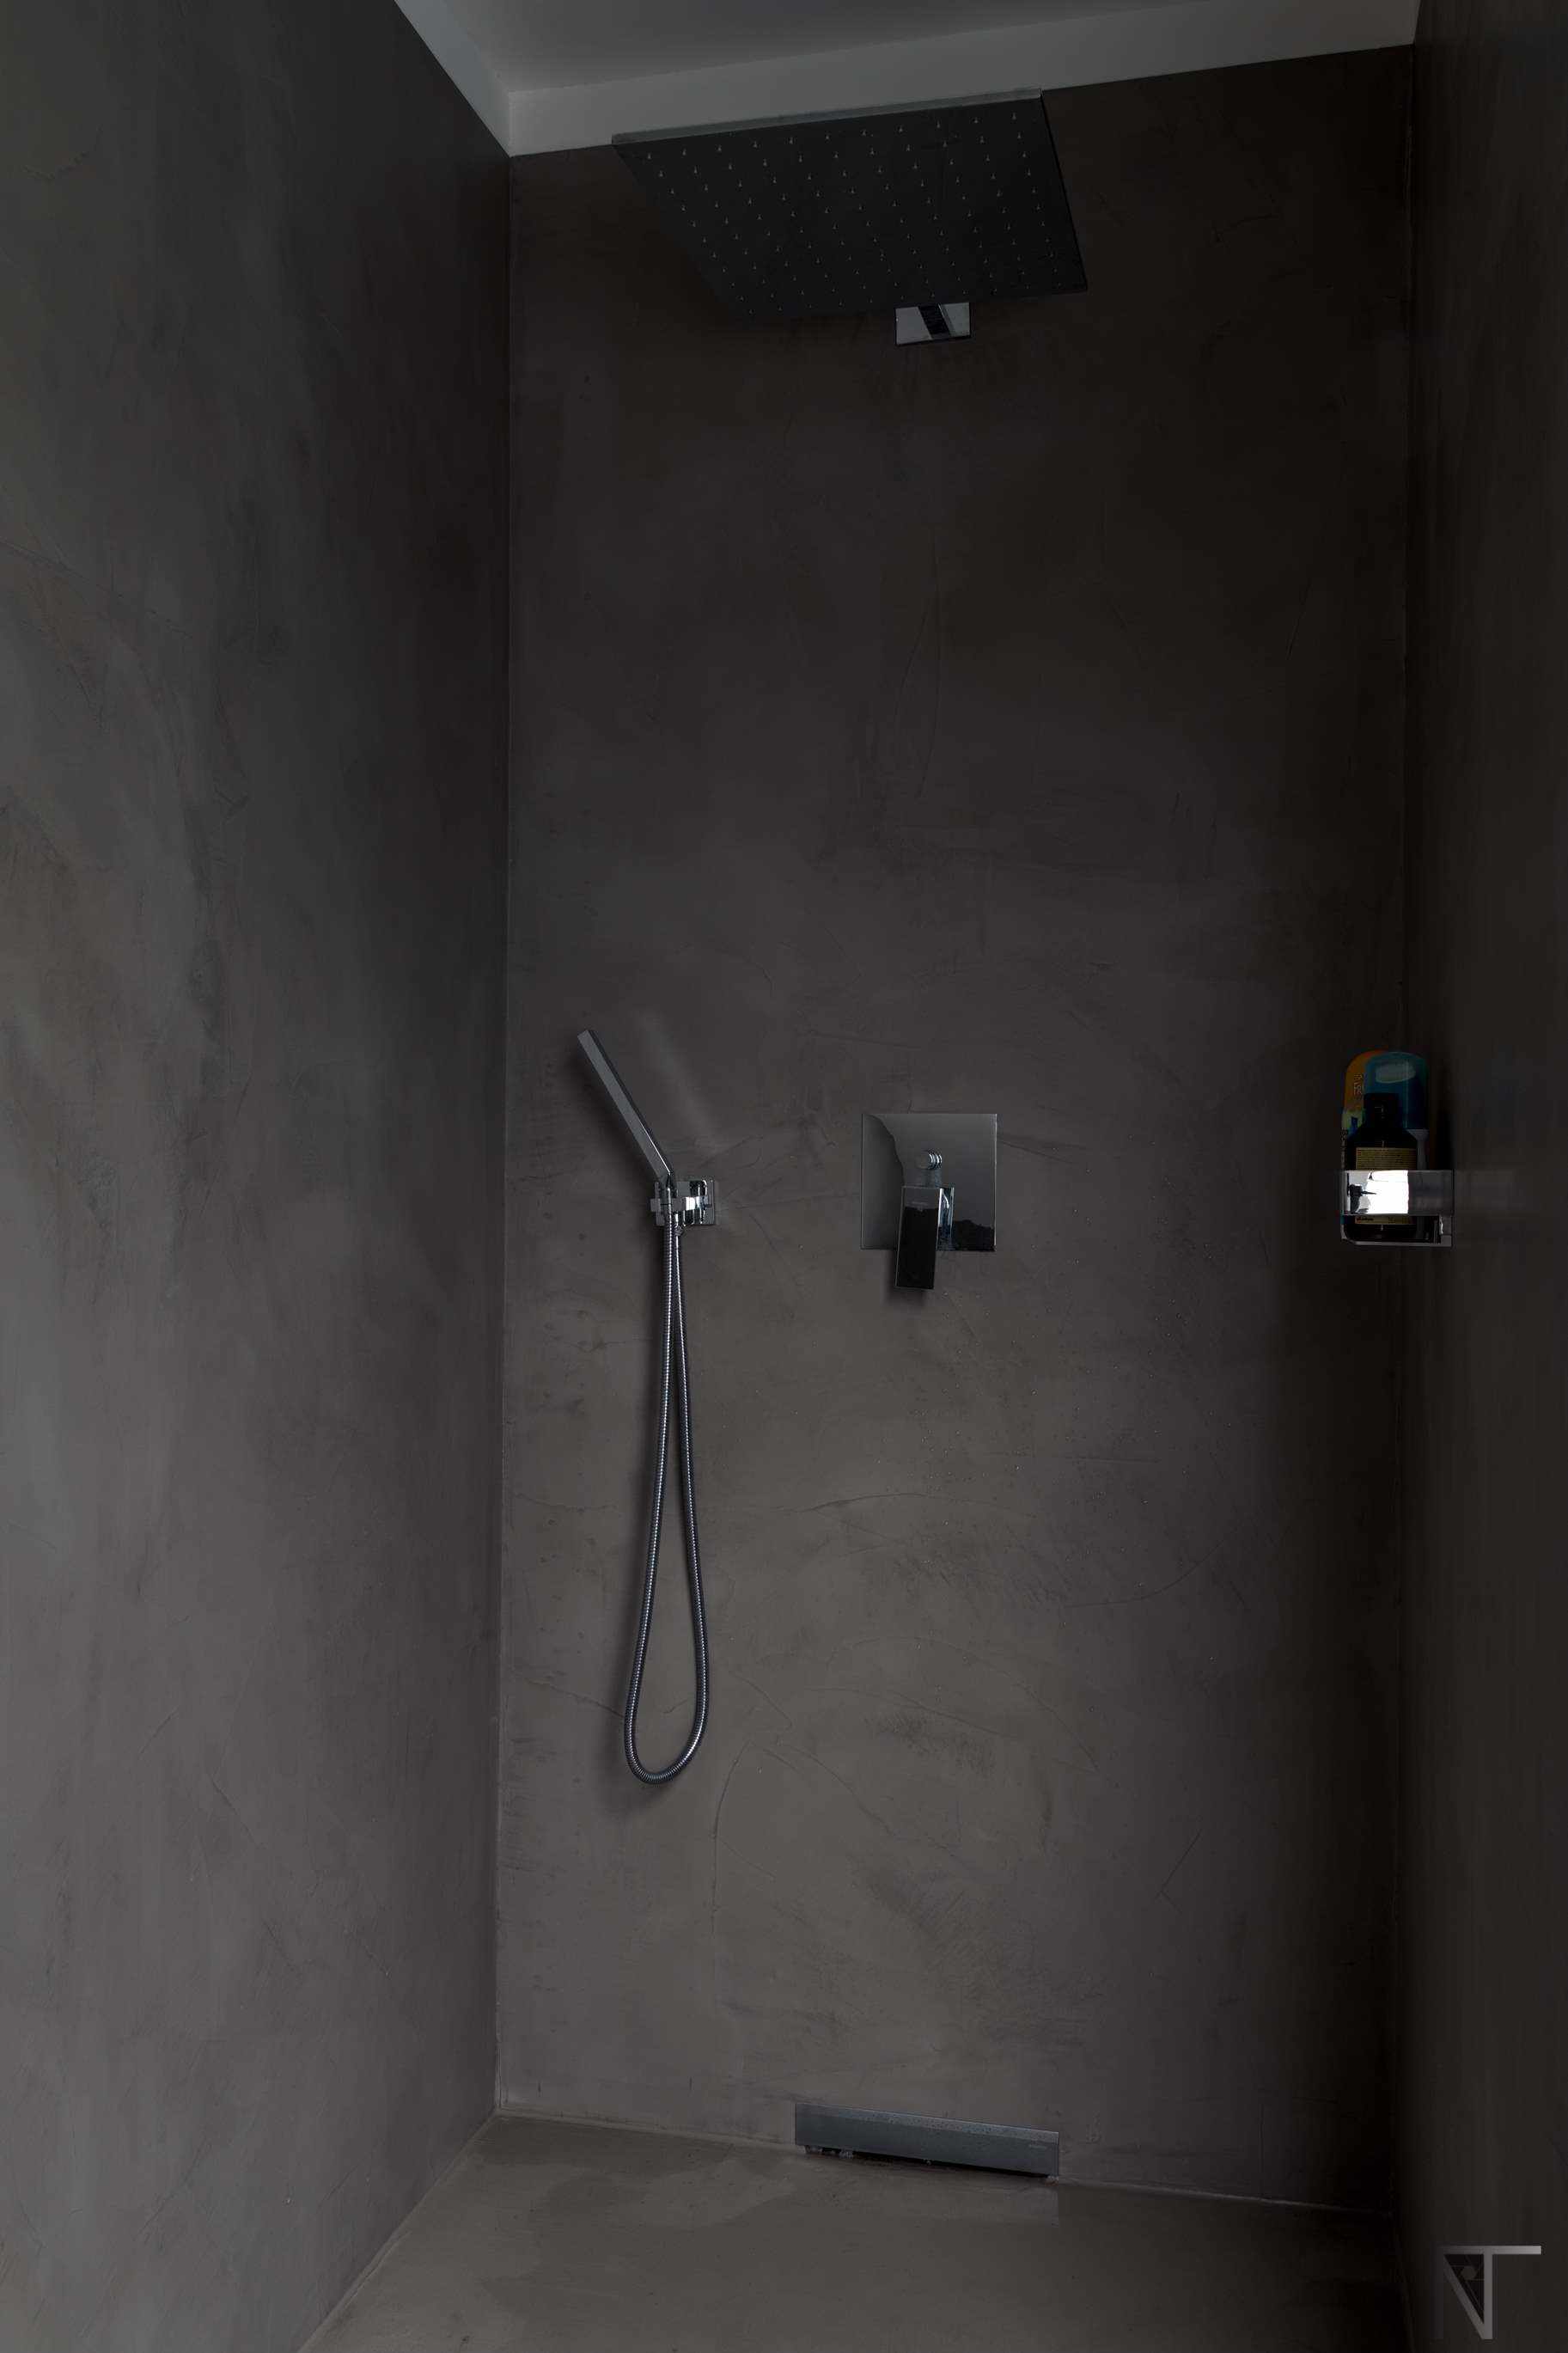 Łazienka z płytkami ceramicznymi odnowiona za pomocą mikrocementu w prysznicu